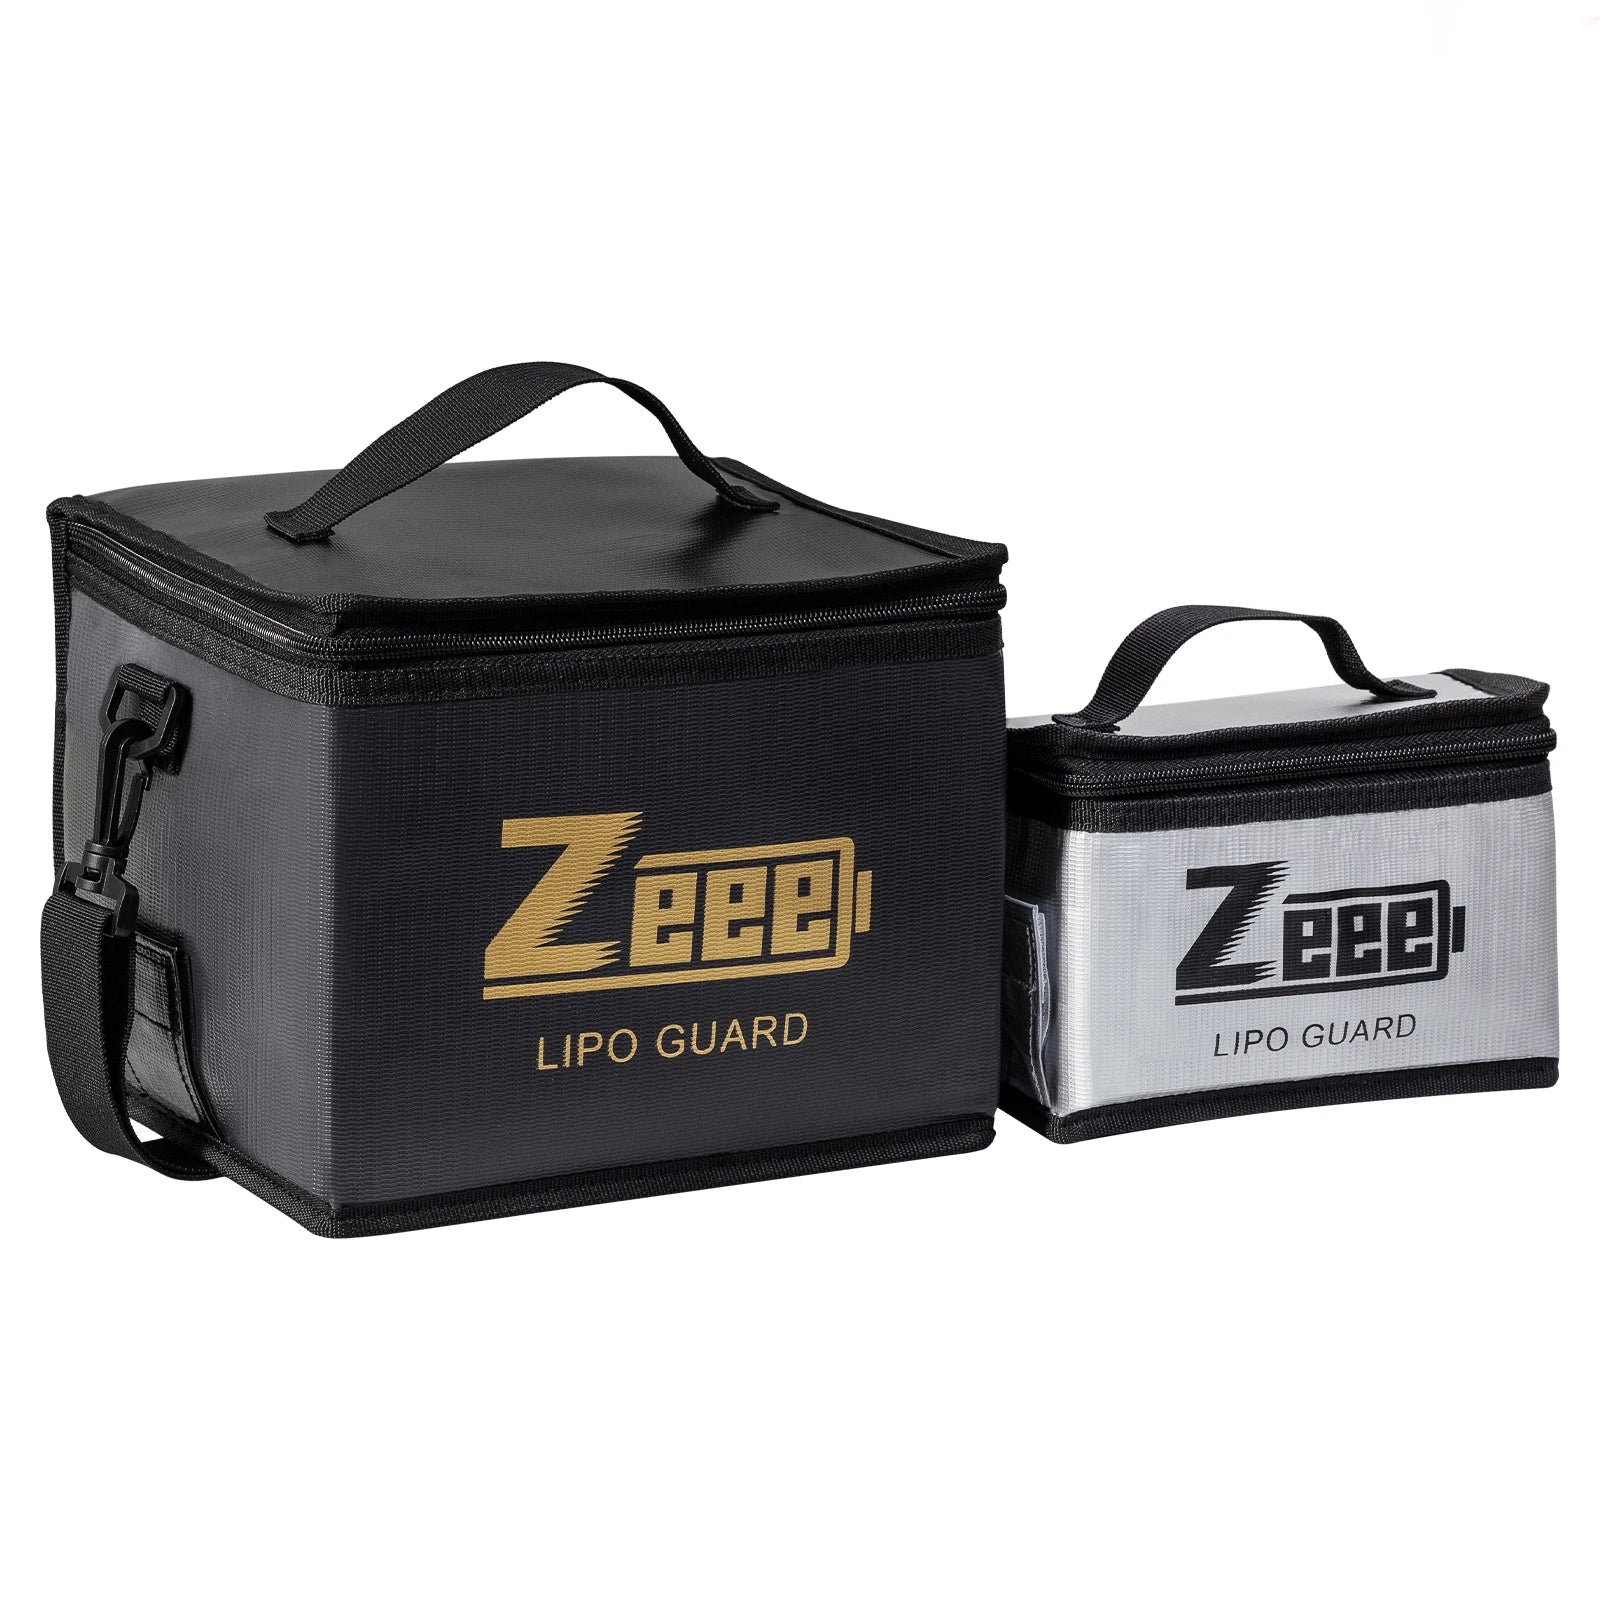 2 Size Zeee Lipo Bag, Zeed] Zep] LIPO GUARD [LIPO 